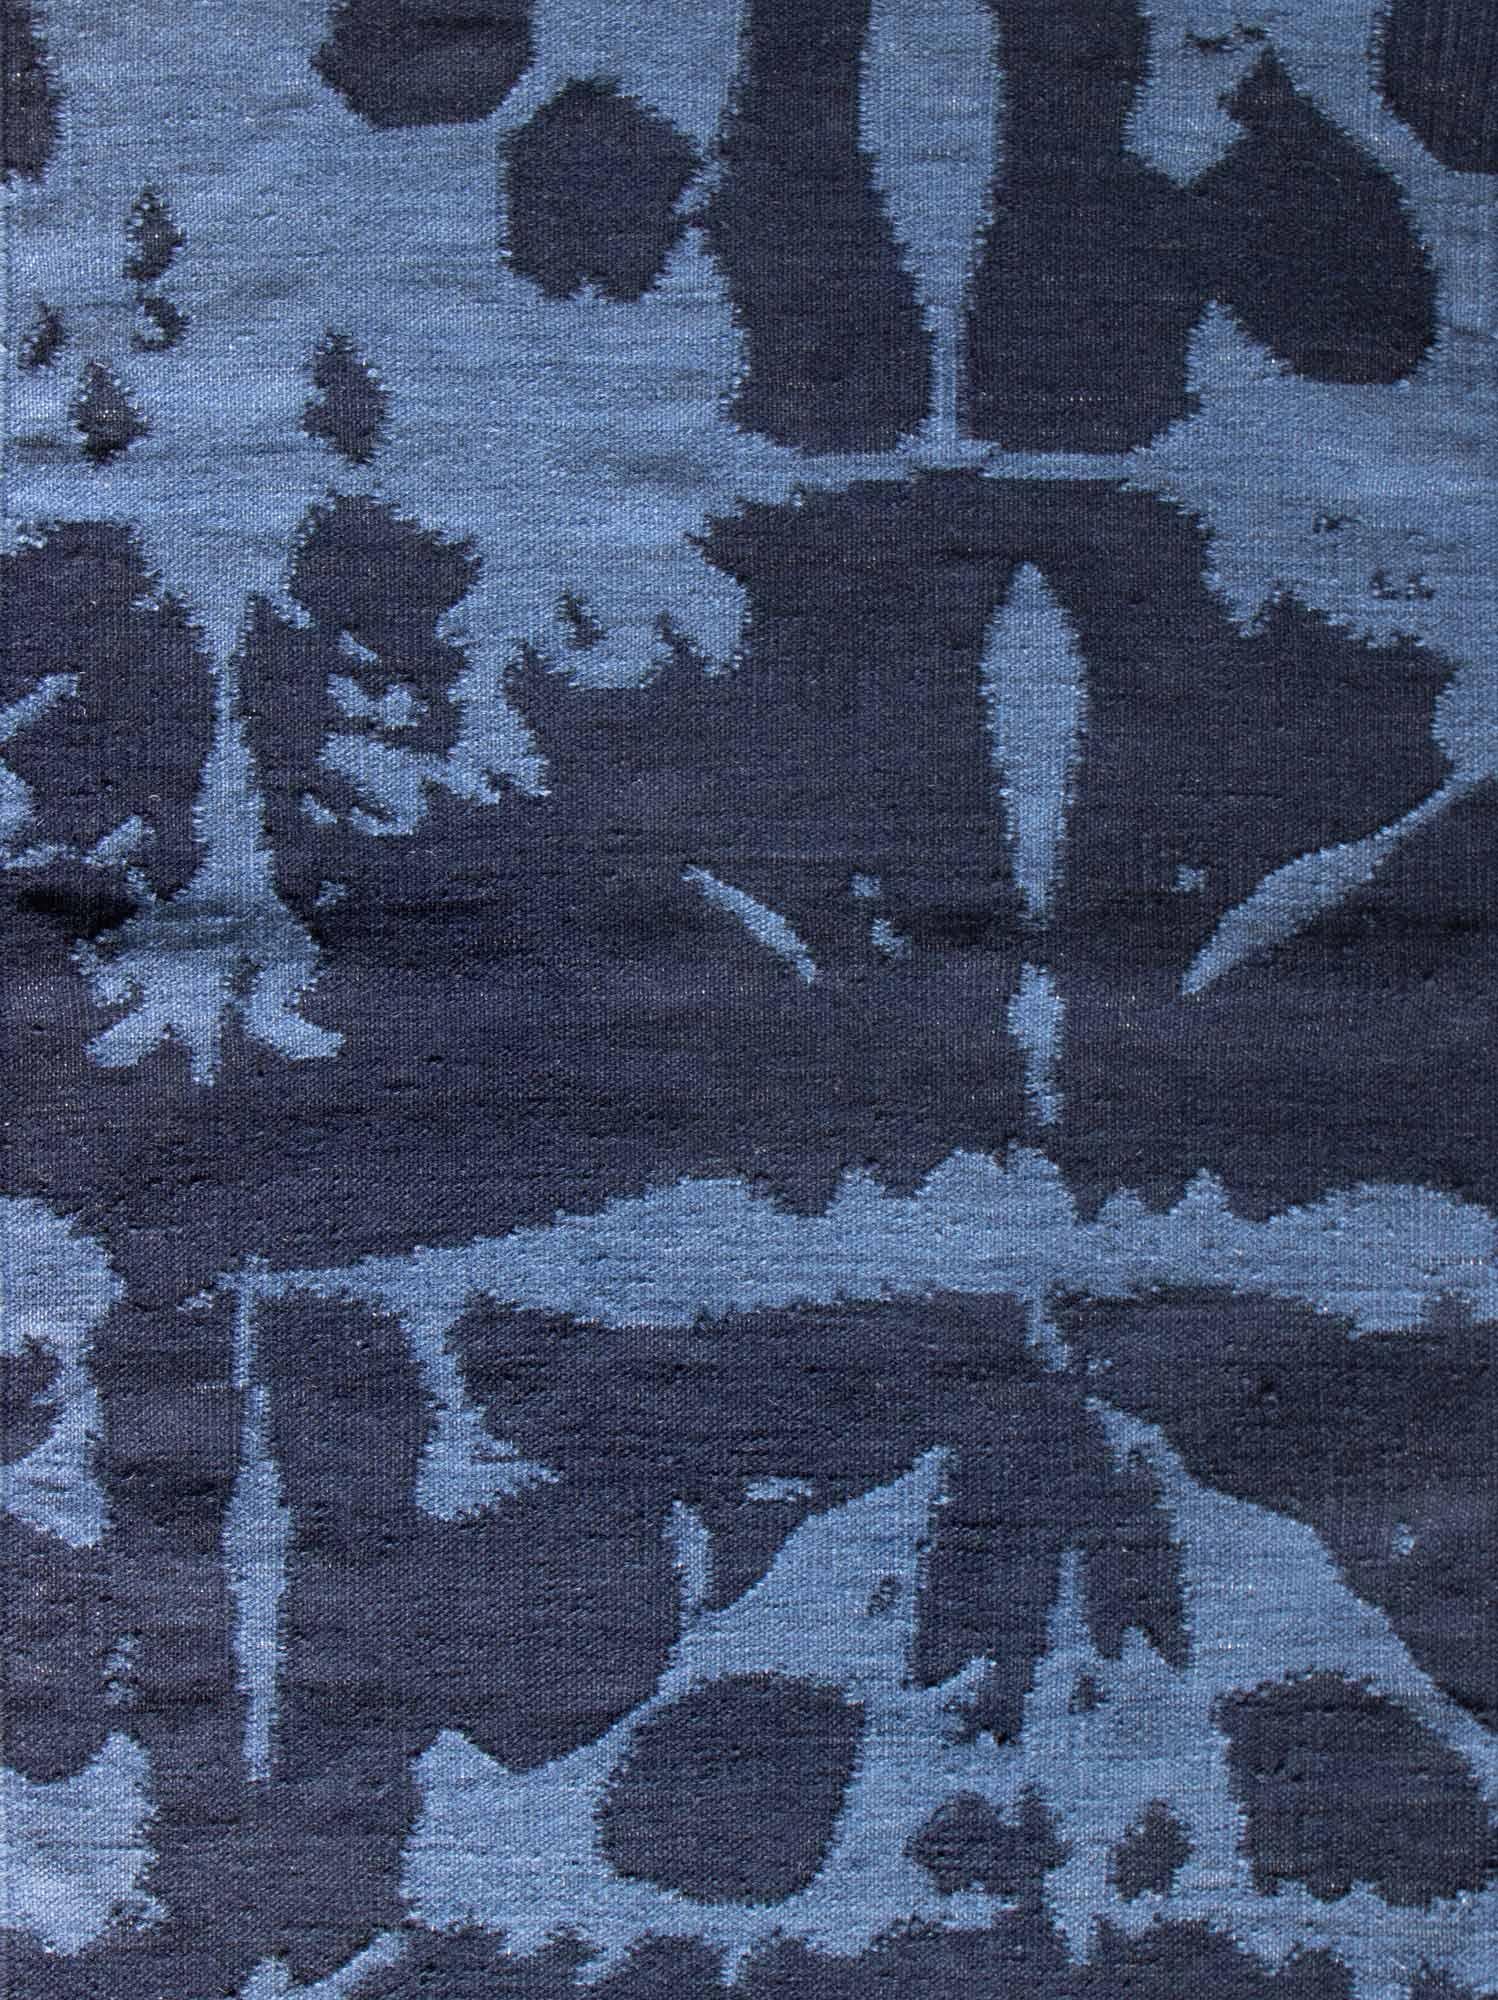 Motif de tapis : Banda - Indigo
MATERIAL : 100% laine de Nouvelle-Zélande
Qualité : Tissé à plat, tissé à la main 
Taille : 6'-0